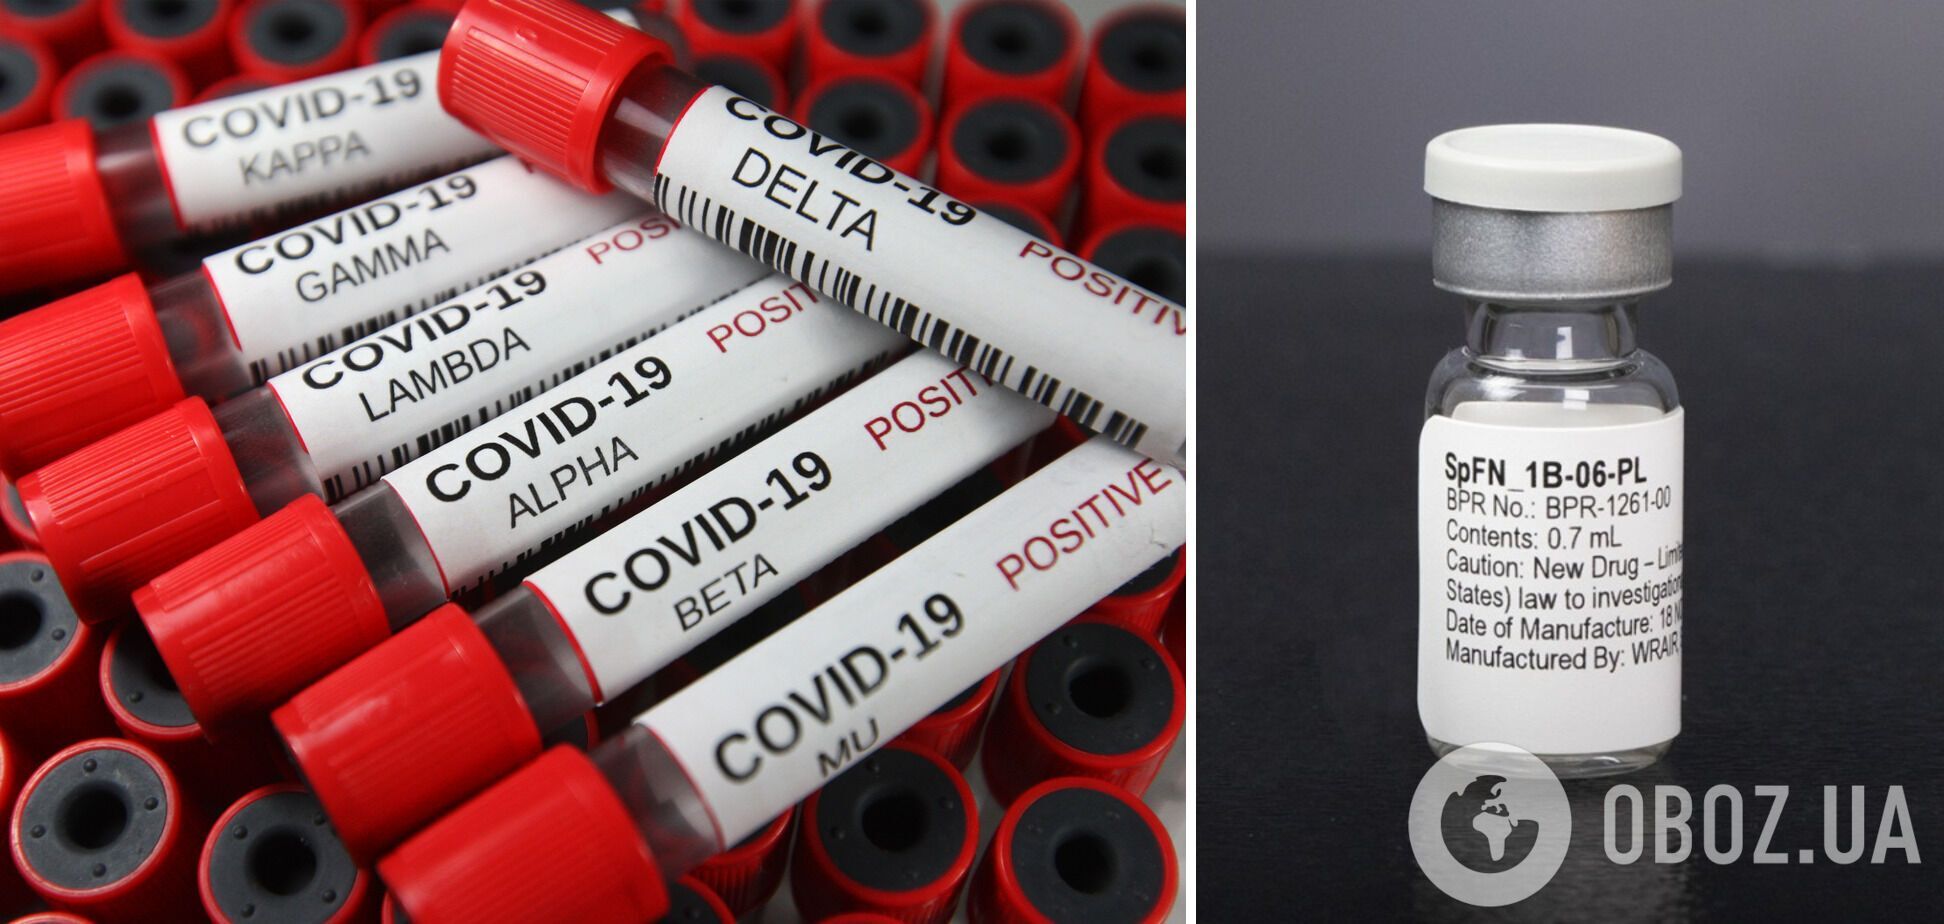 Специалисты говорят, что вакцина SpFN сможет защитить от любого штамма COVID-19.